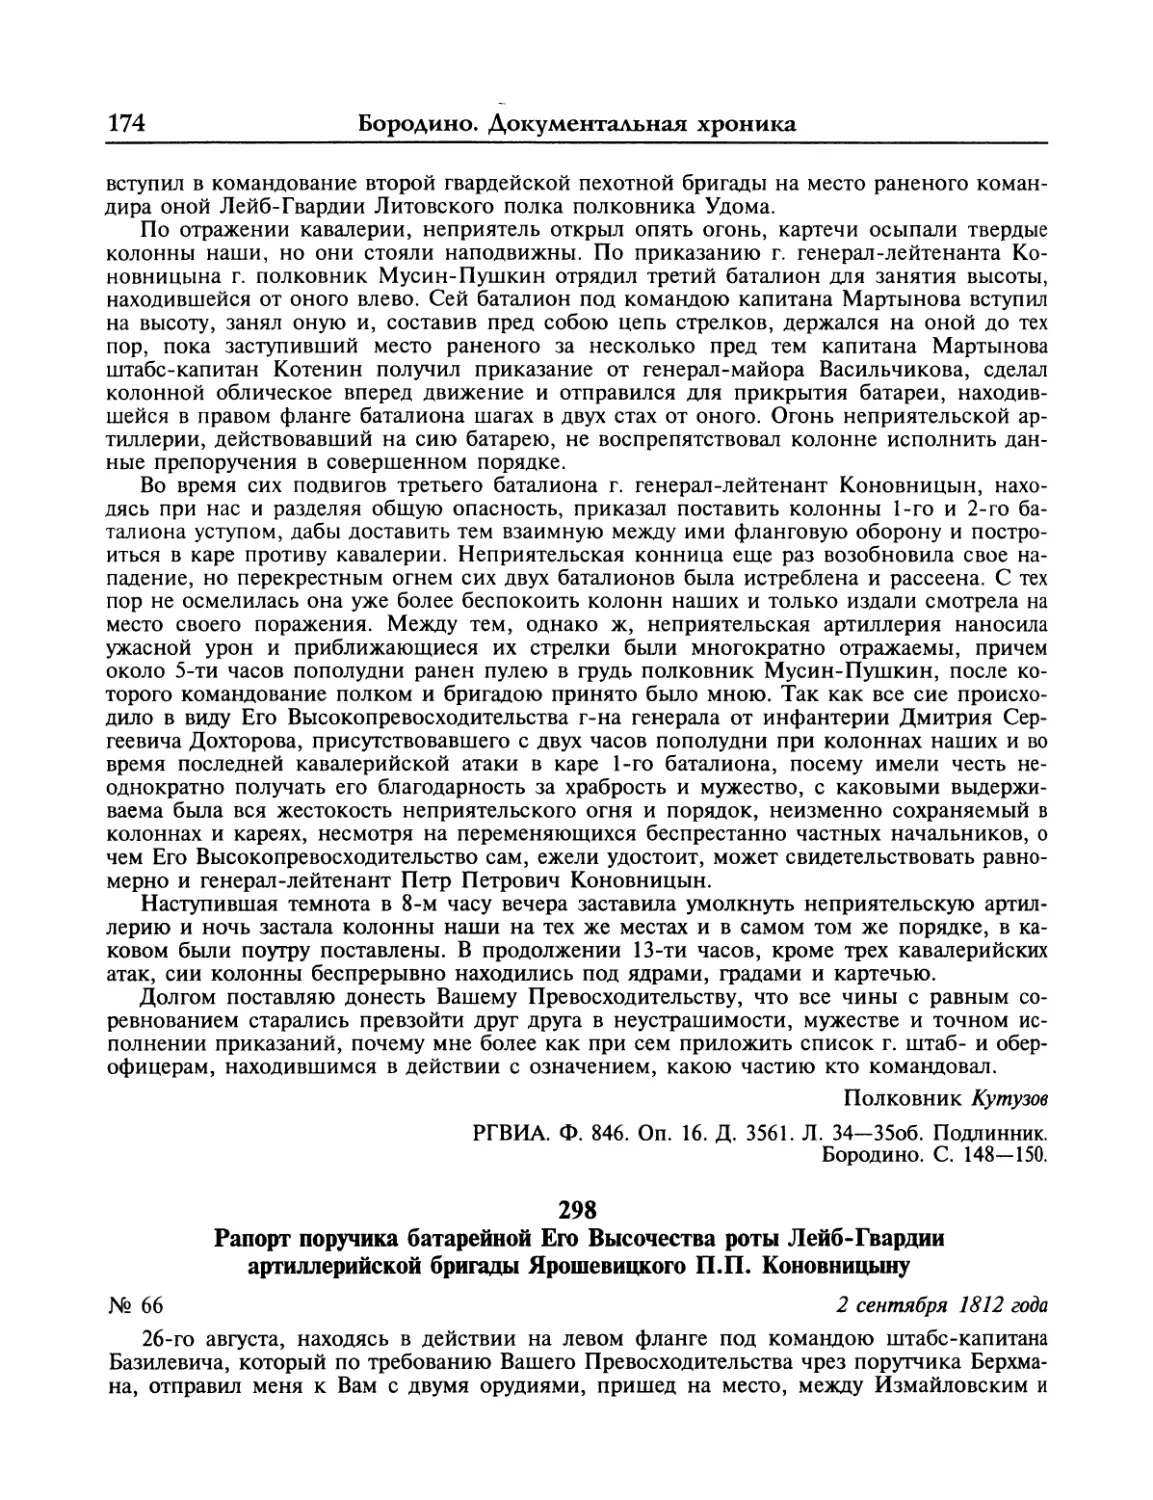 Рапорт Ярошевицкого П.П.Коновницыну